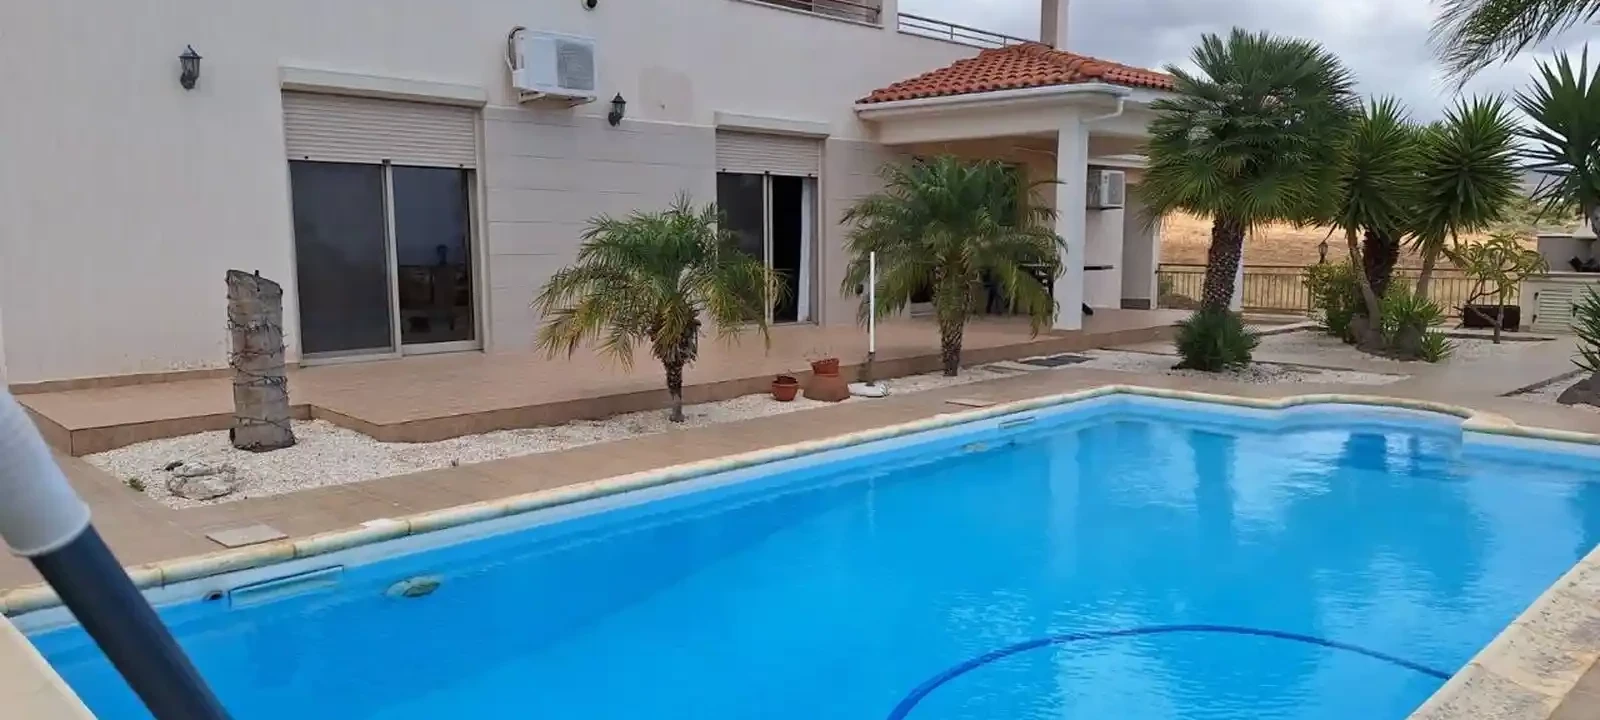 4-bedroom villa to rent €2.200, image 1